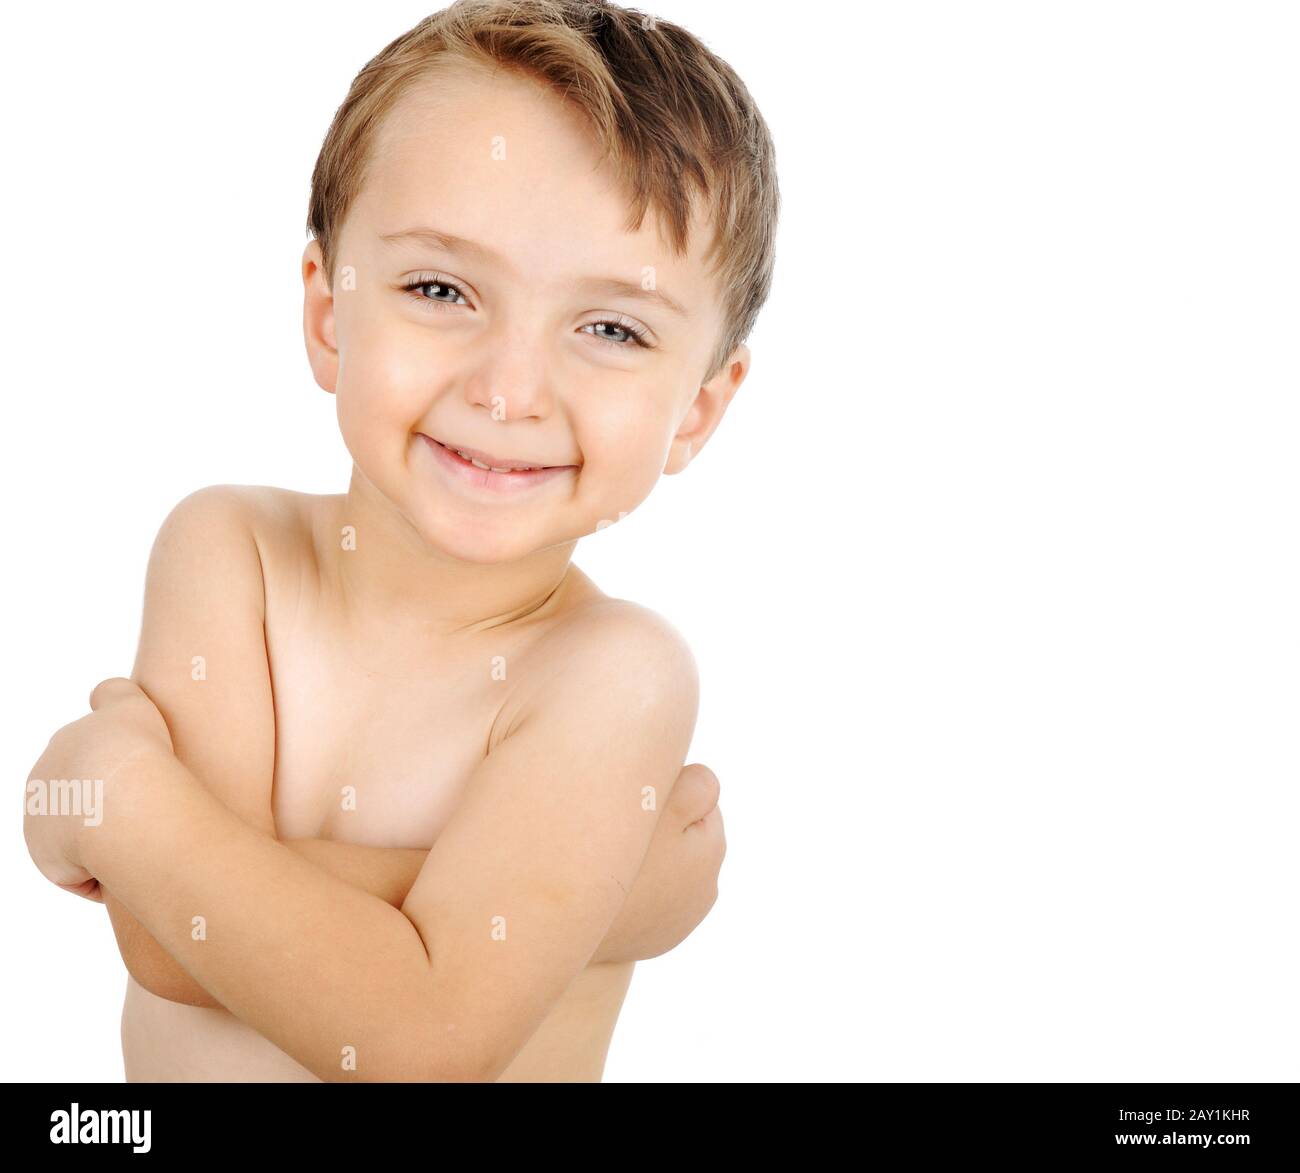 Niño sin ropa Imágenes recortadas de stock - Alamy